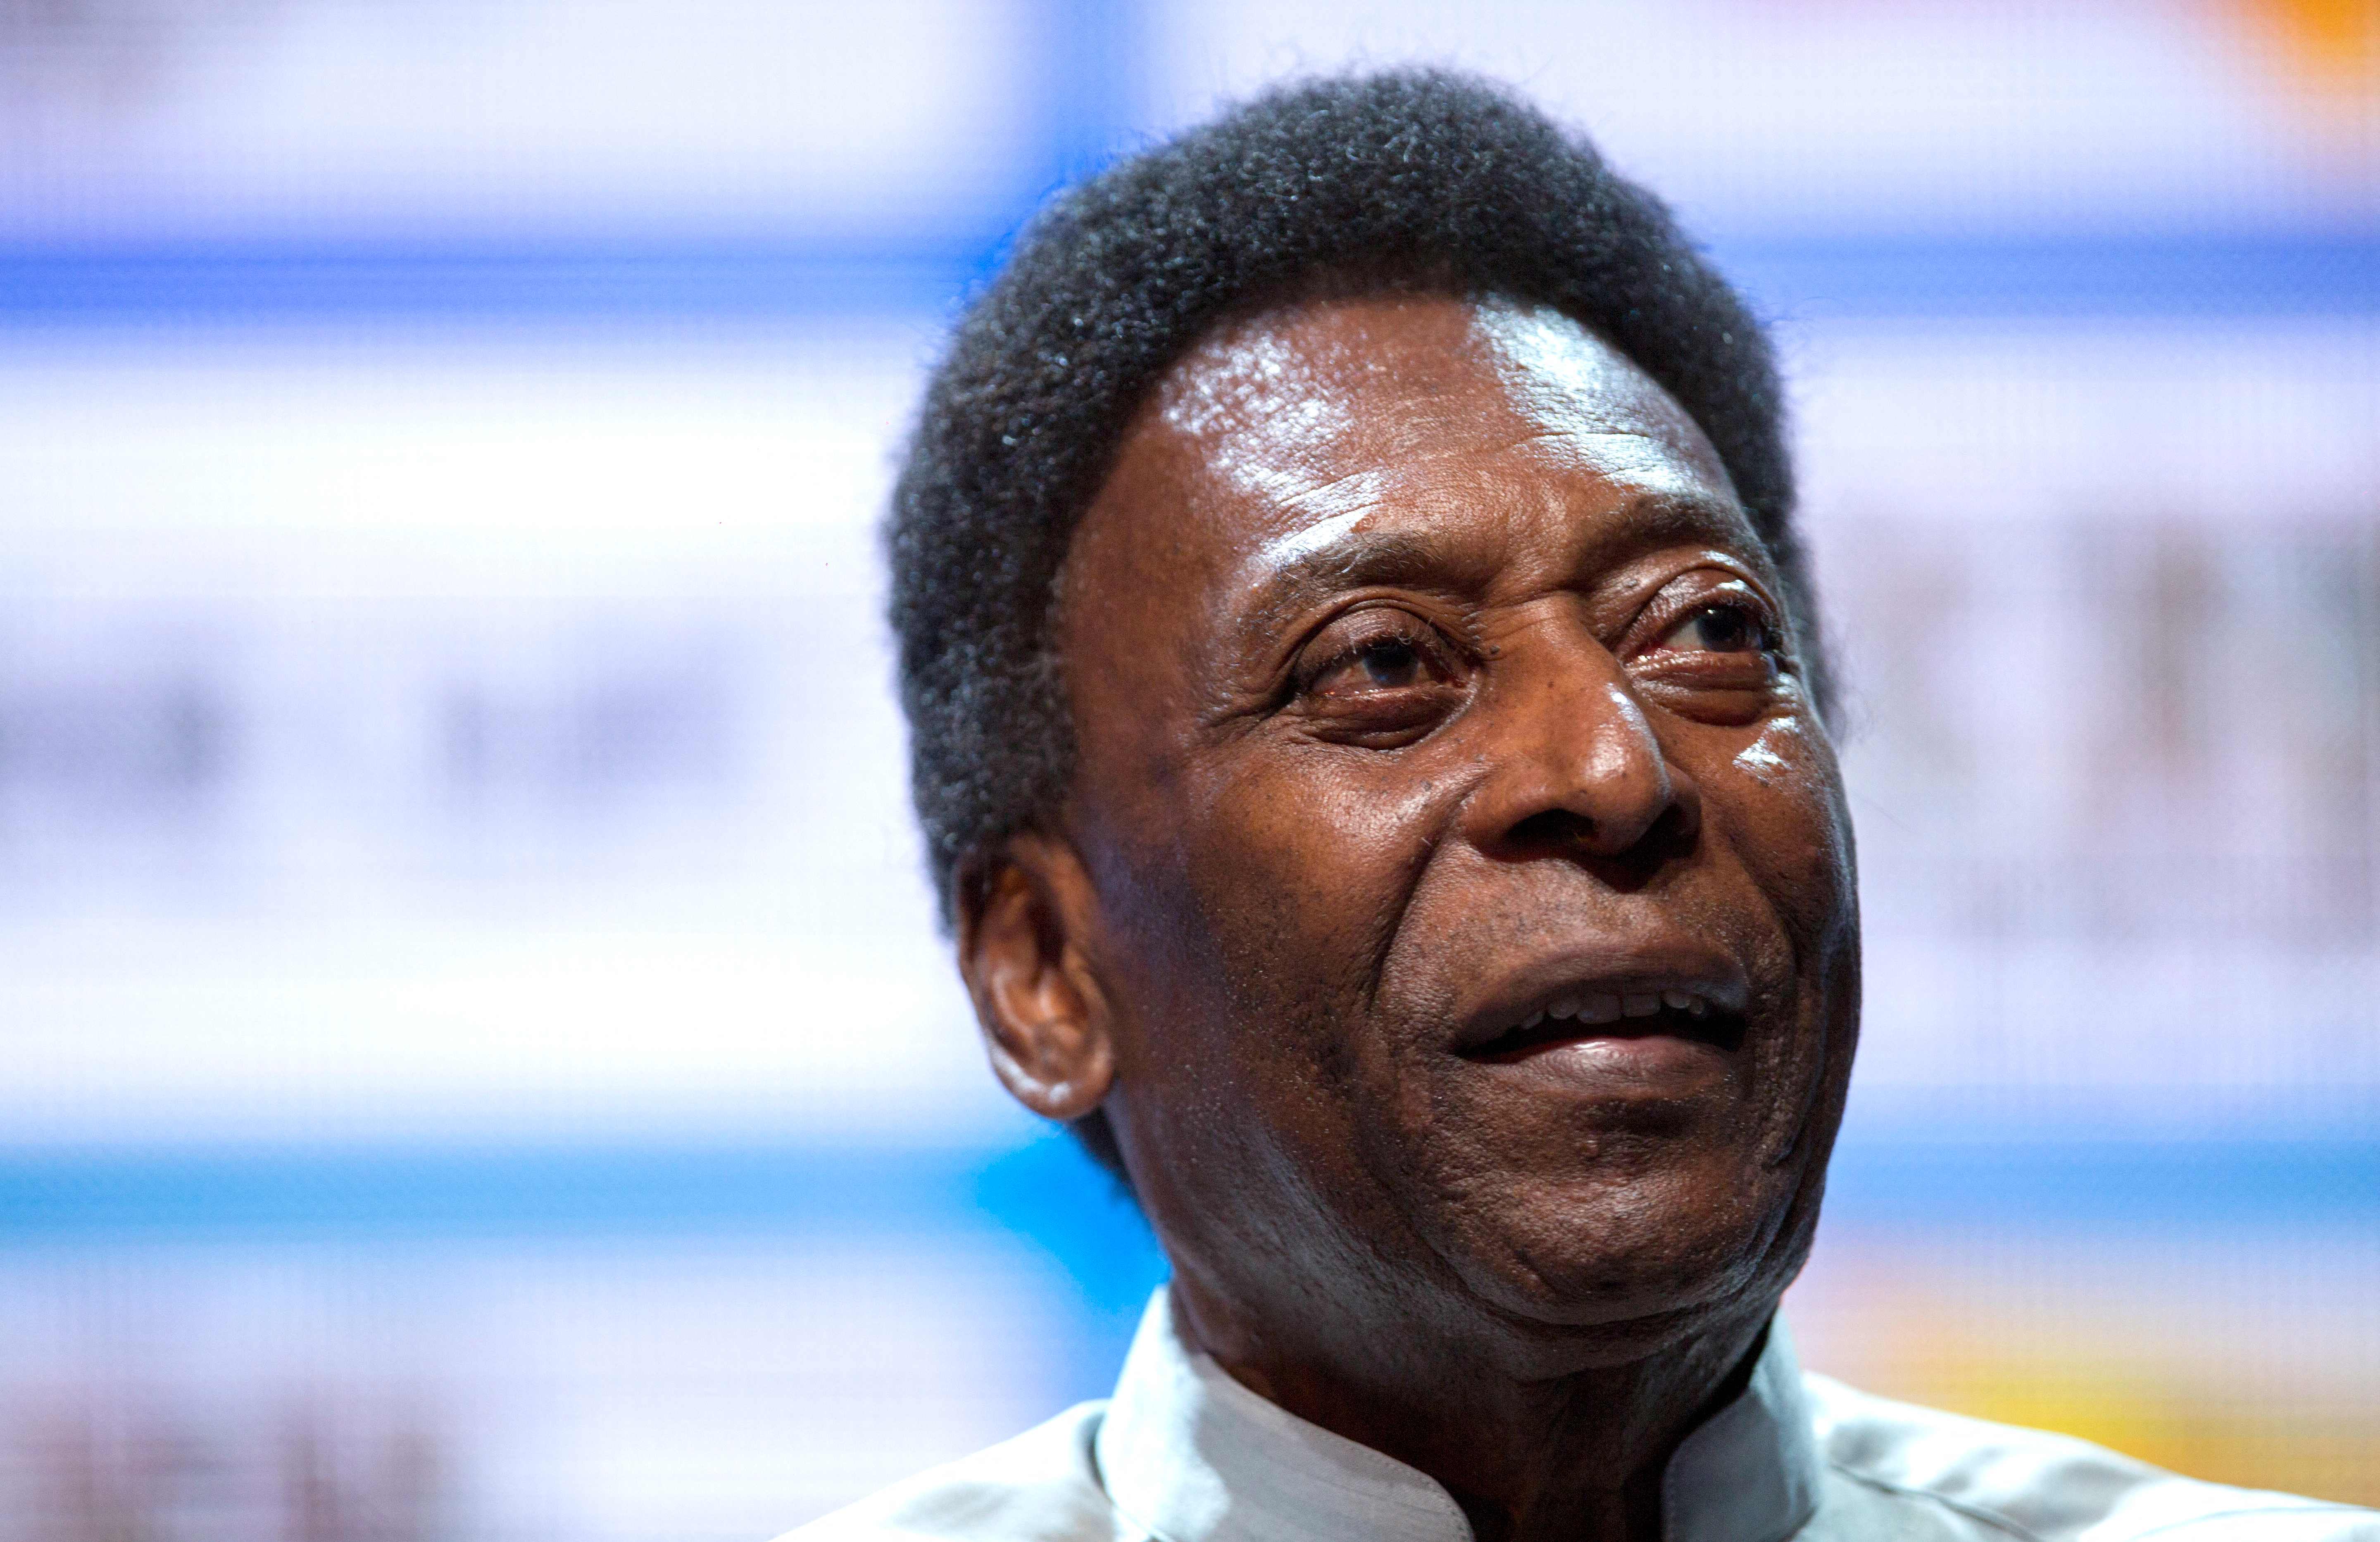 Pelé continúa sufriendo problemas de salud pero últimamente ha mostrado mejorías, según fuentes cercanas al exjugador. (Foto Prensa Libre: AFP)